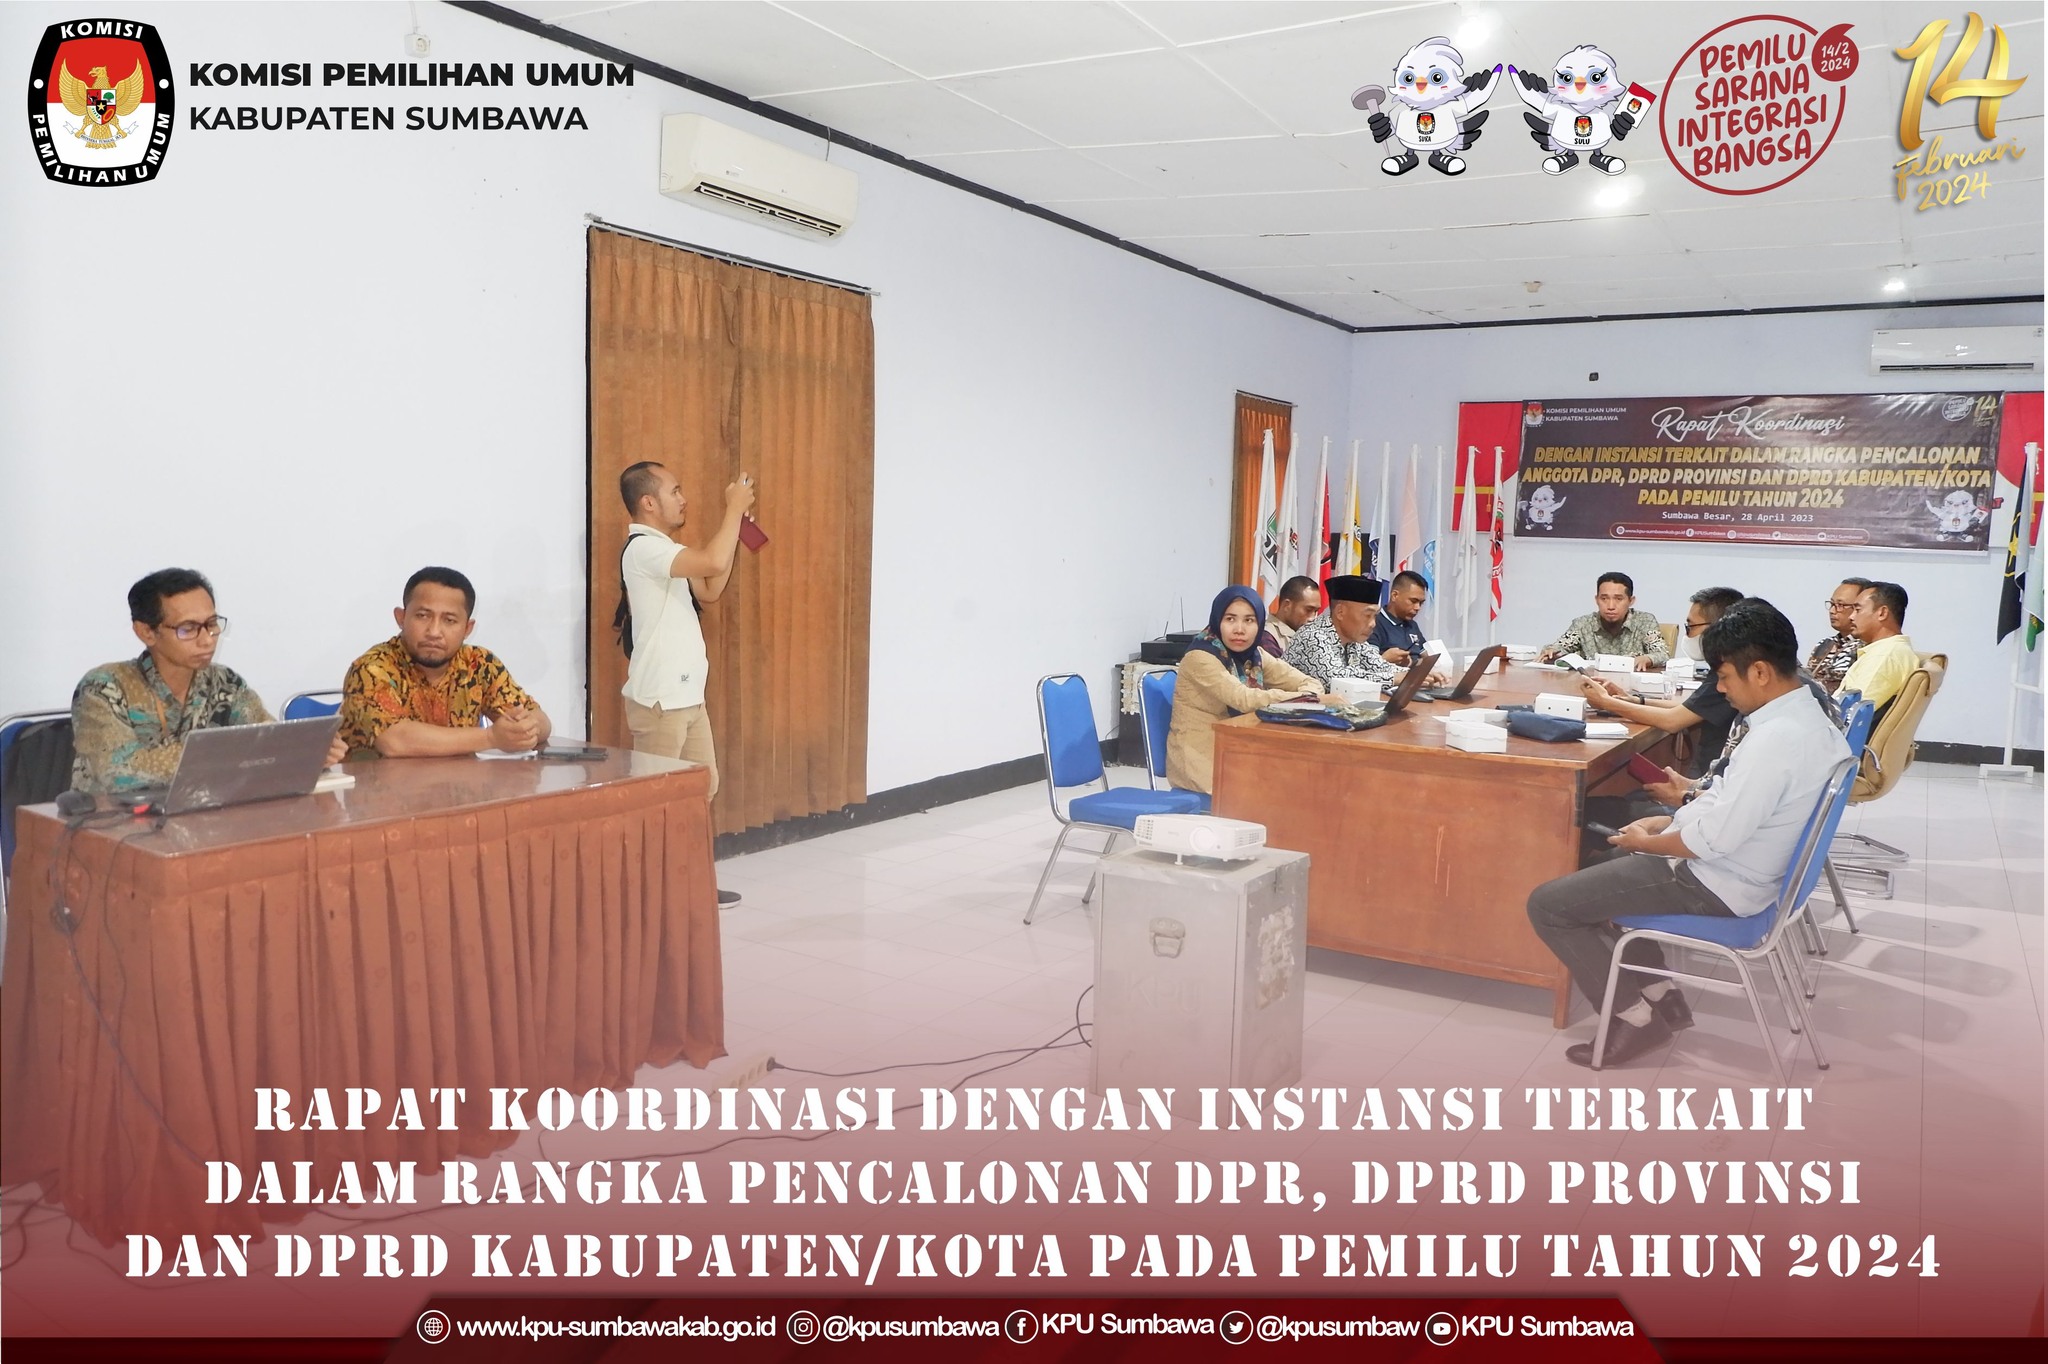 Rapat Koordinasi Dengan Instansi Dalam Rangka Pencalonan DPR, DPRD Provinsi DAn DPR Kabupaten